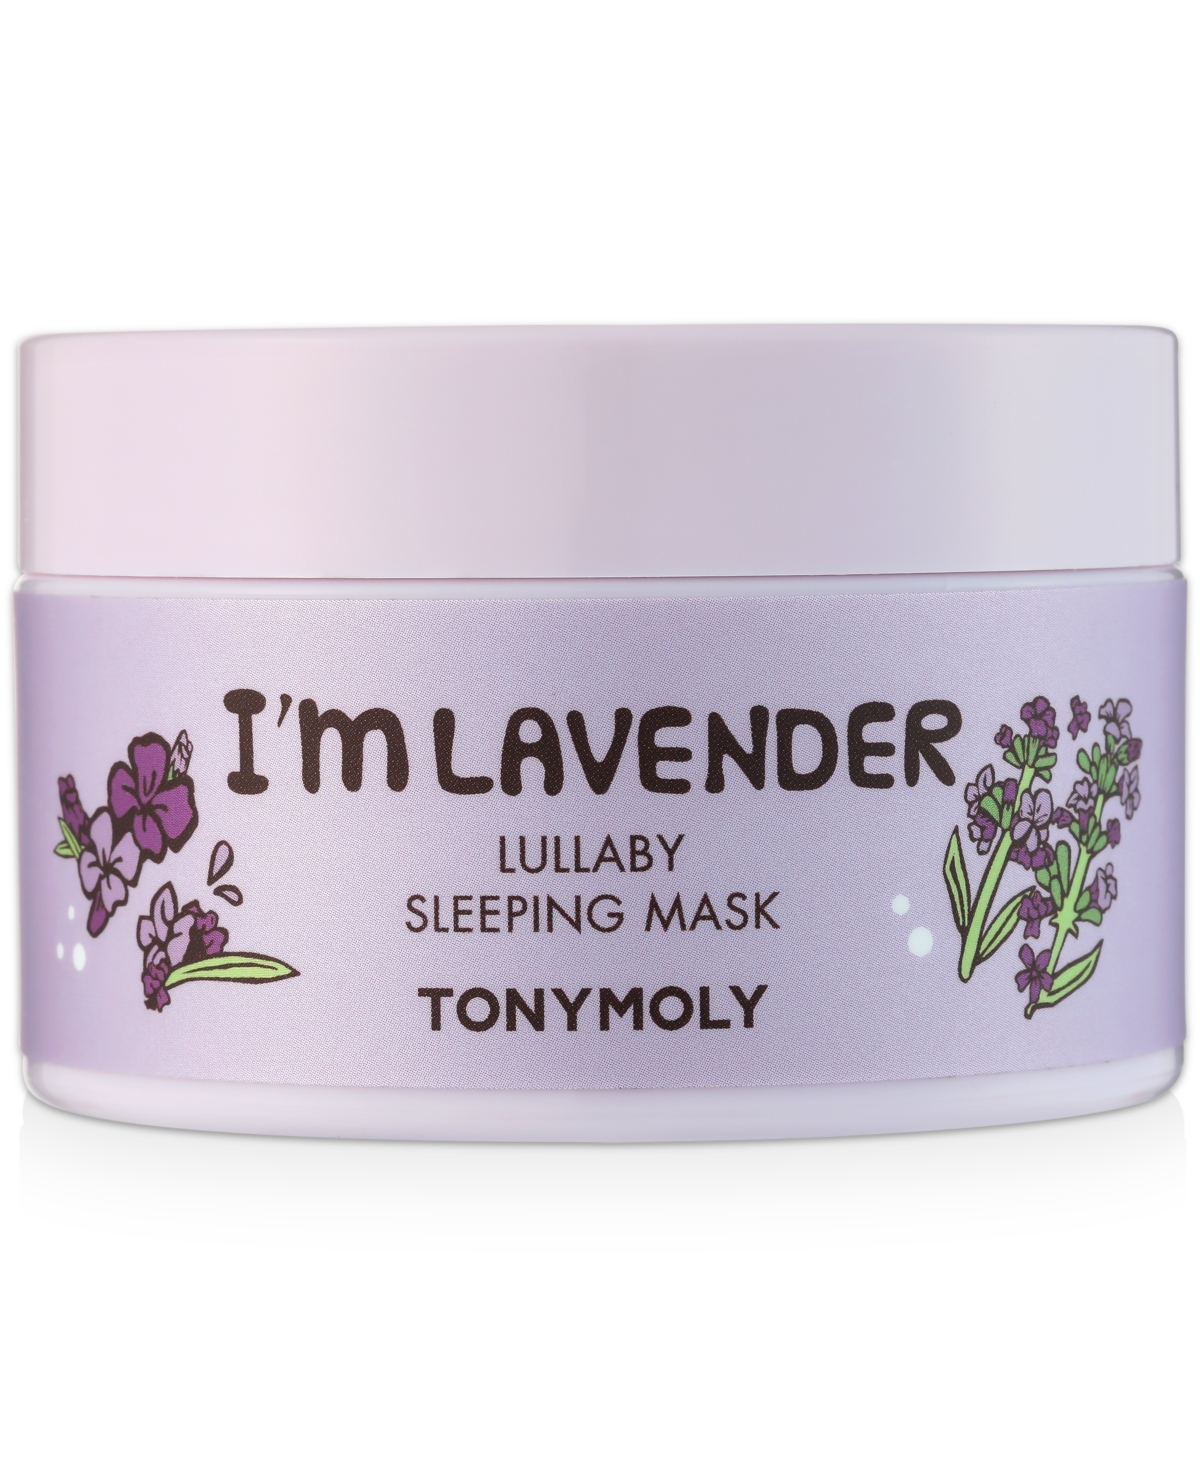 I'm Lavender Lullaby Sleeping Mask